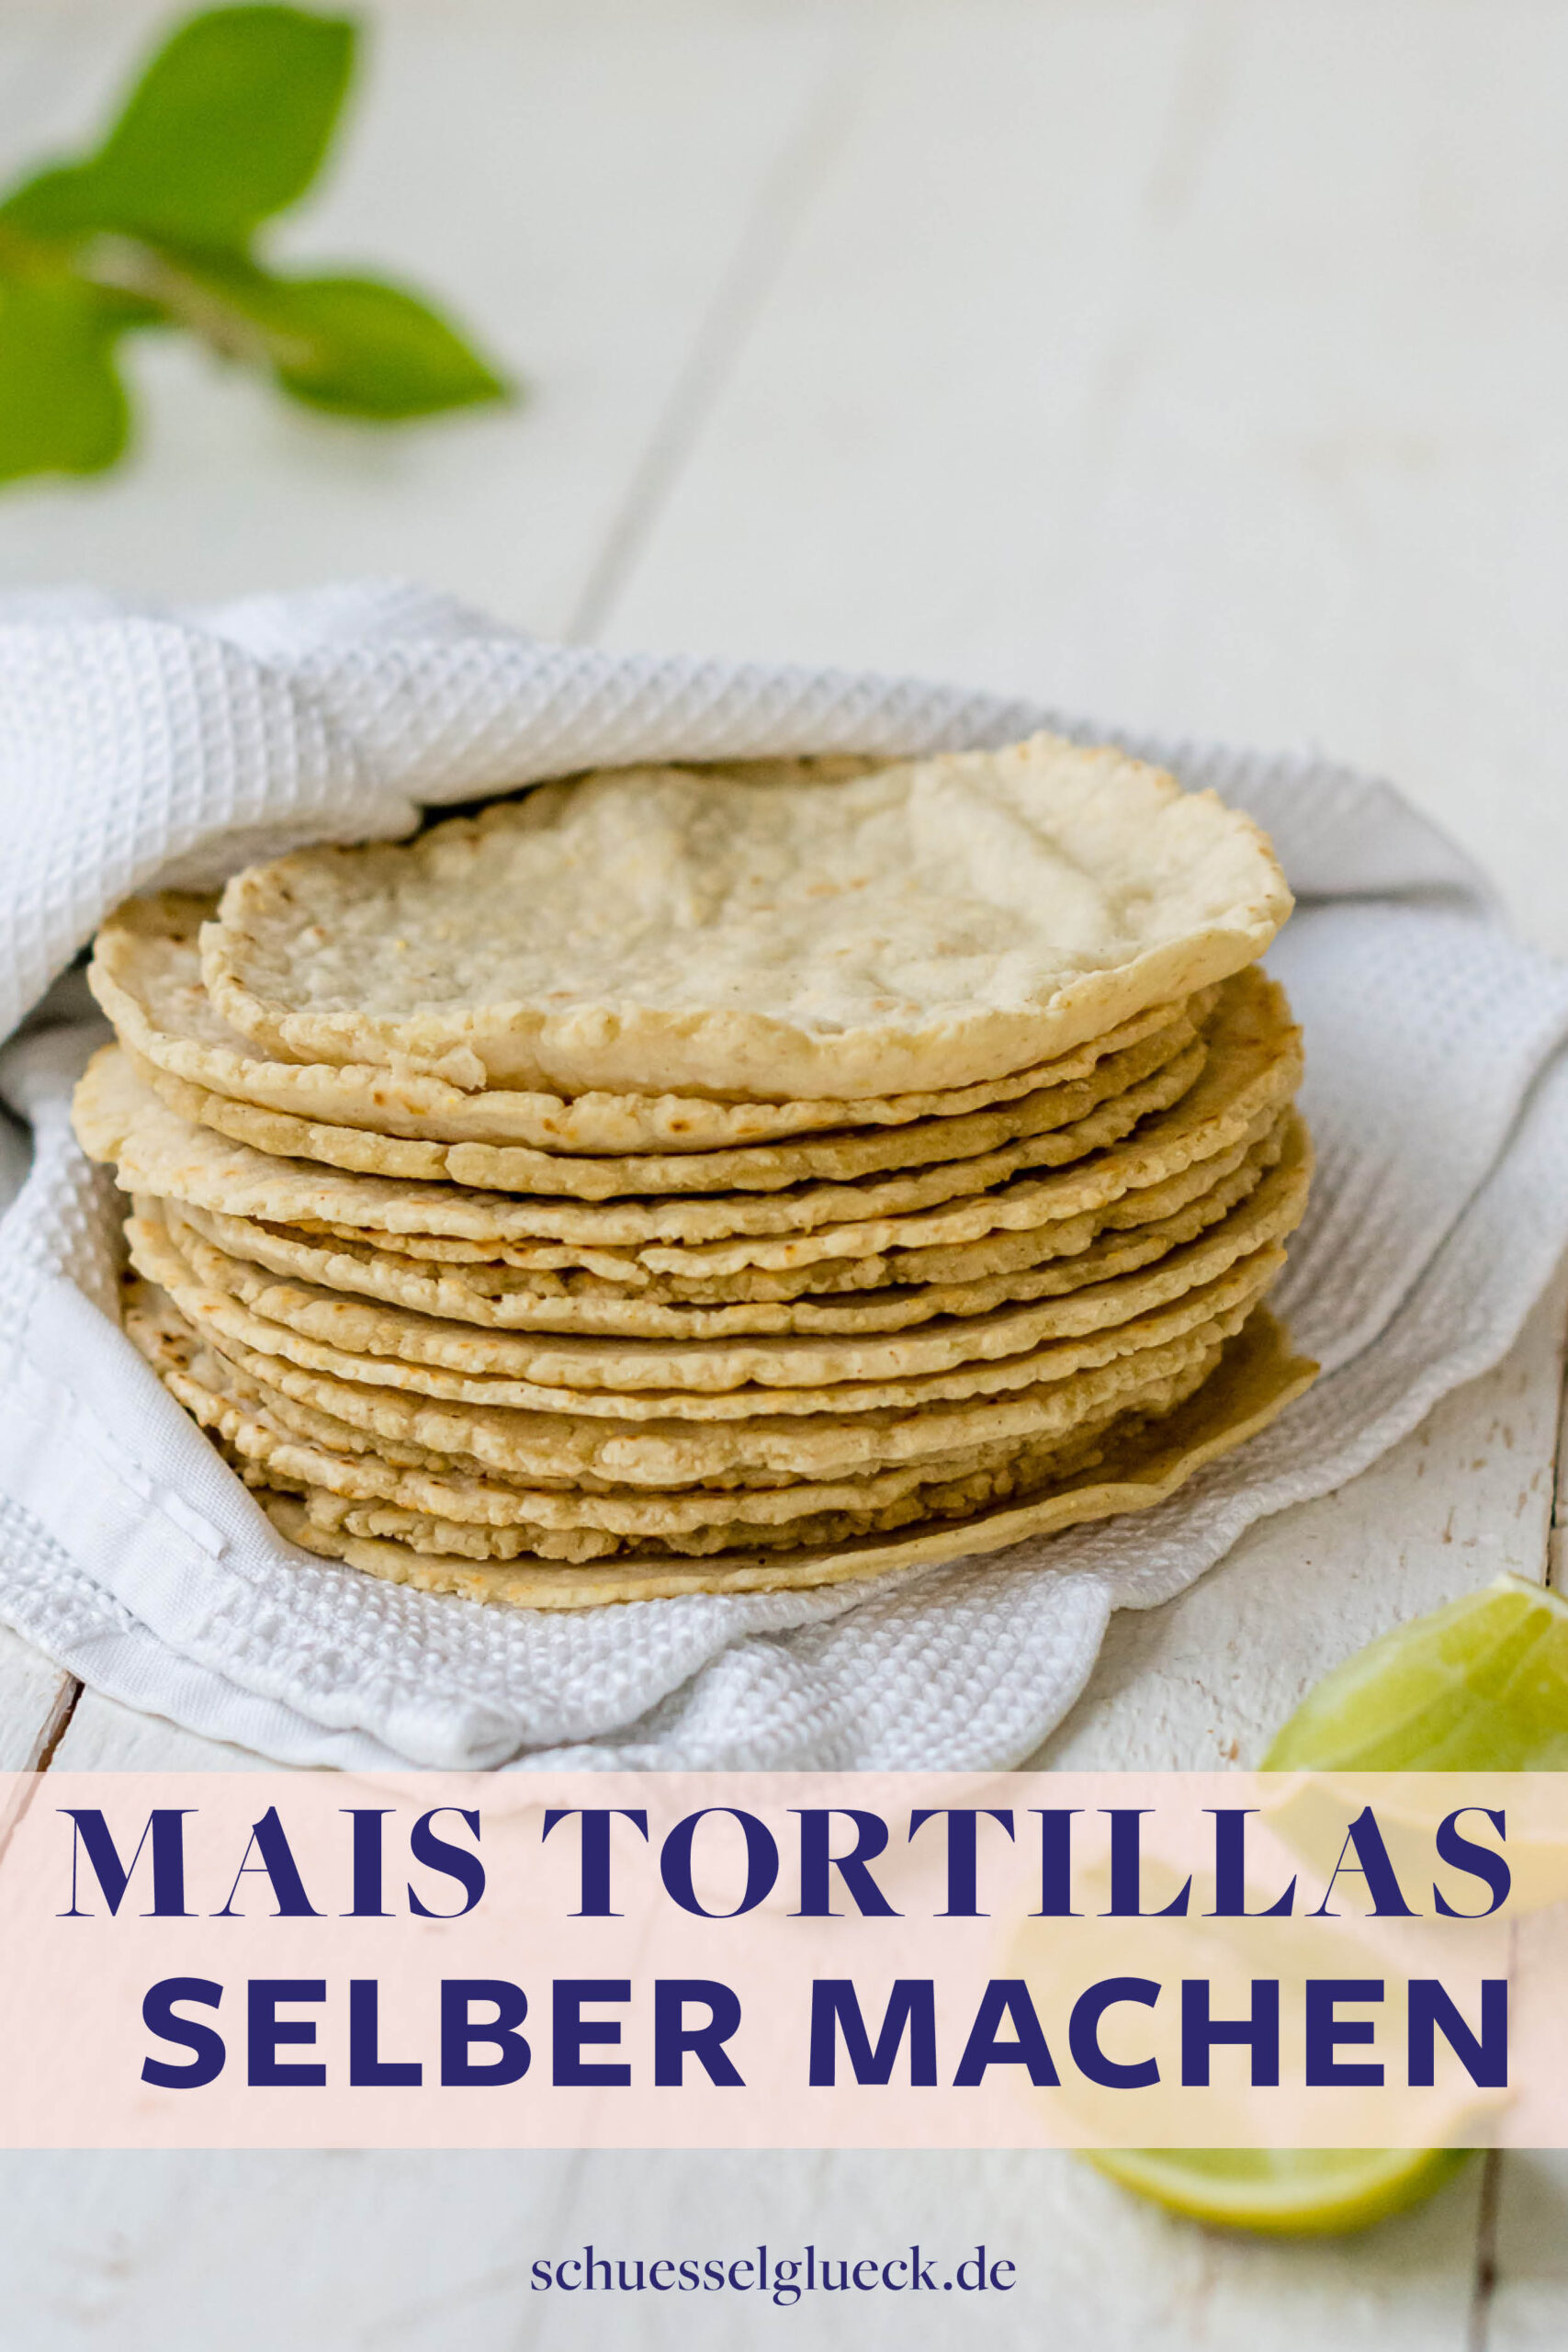 Tortillas aus Maismehl wie in Mexiko selber machen – mit Schritt für Schritt Anleitung!